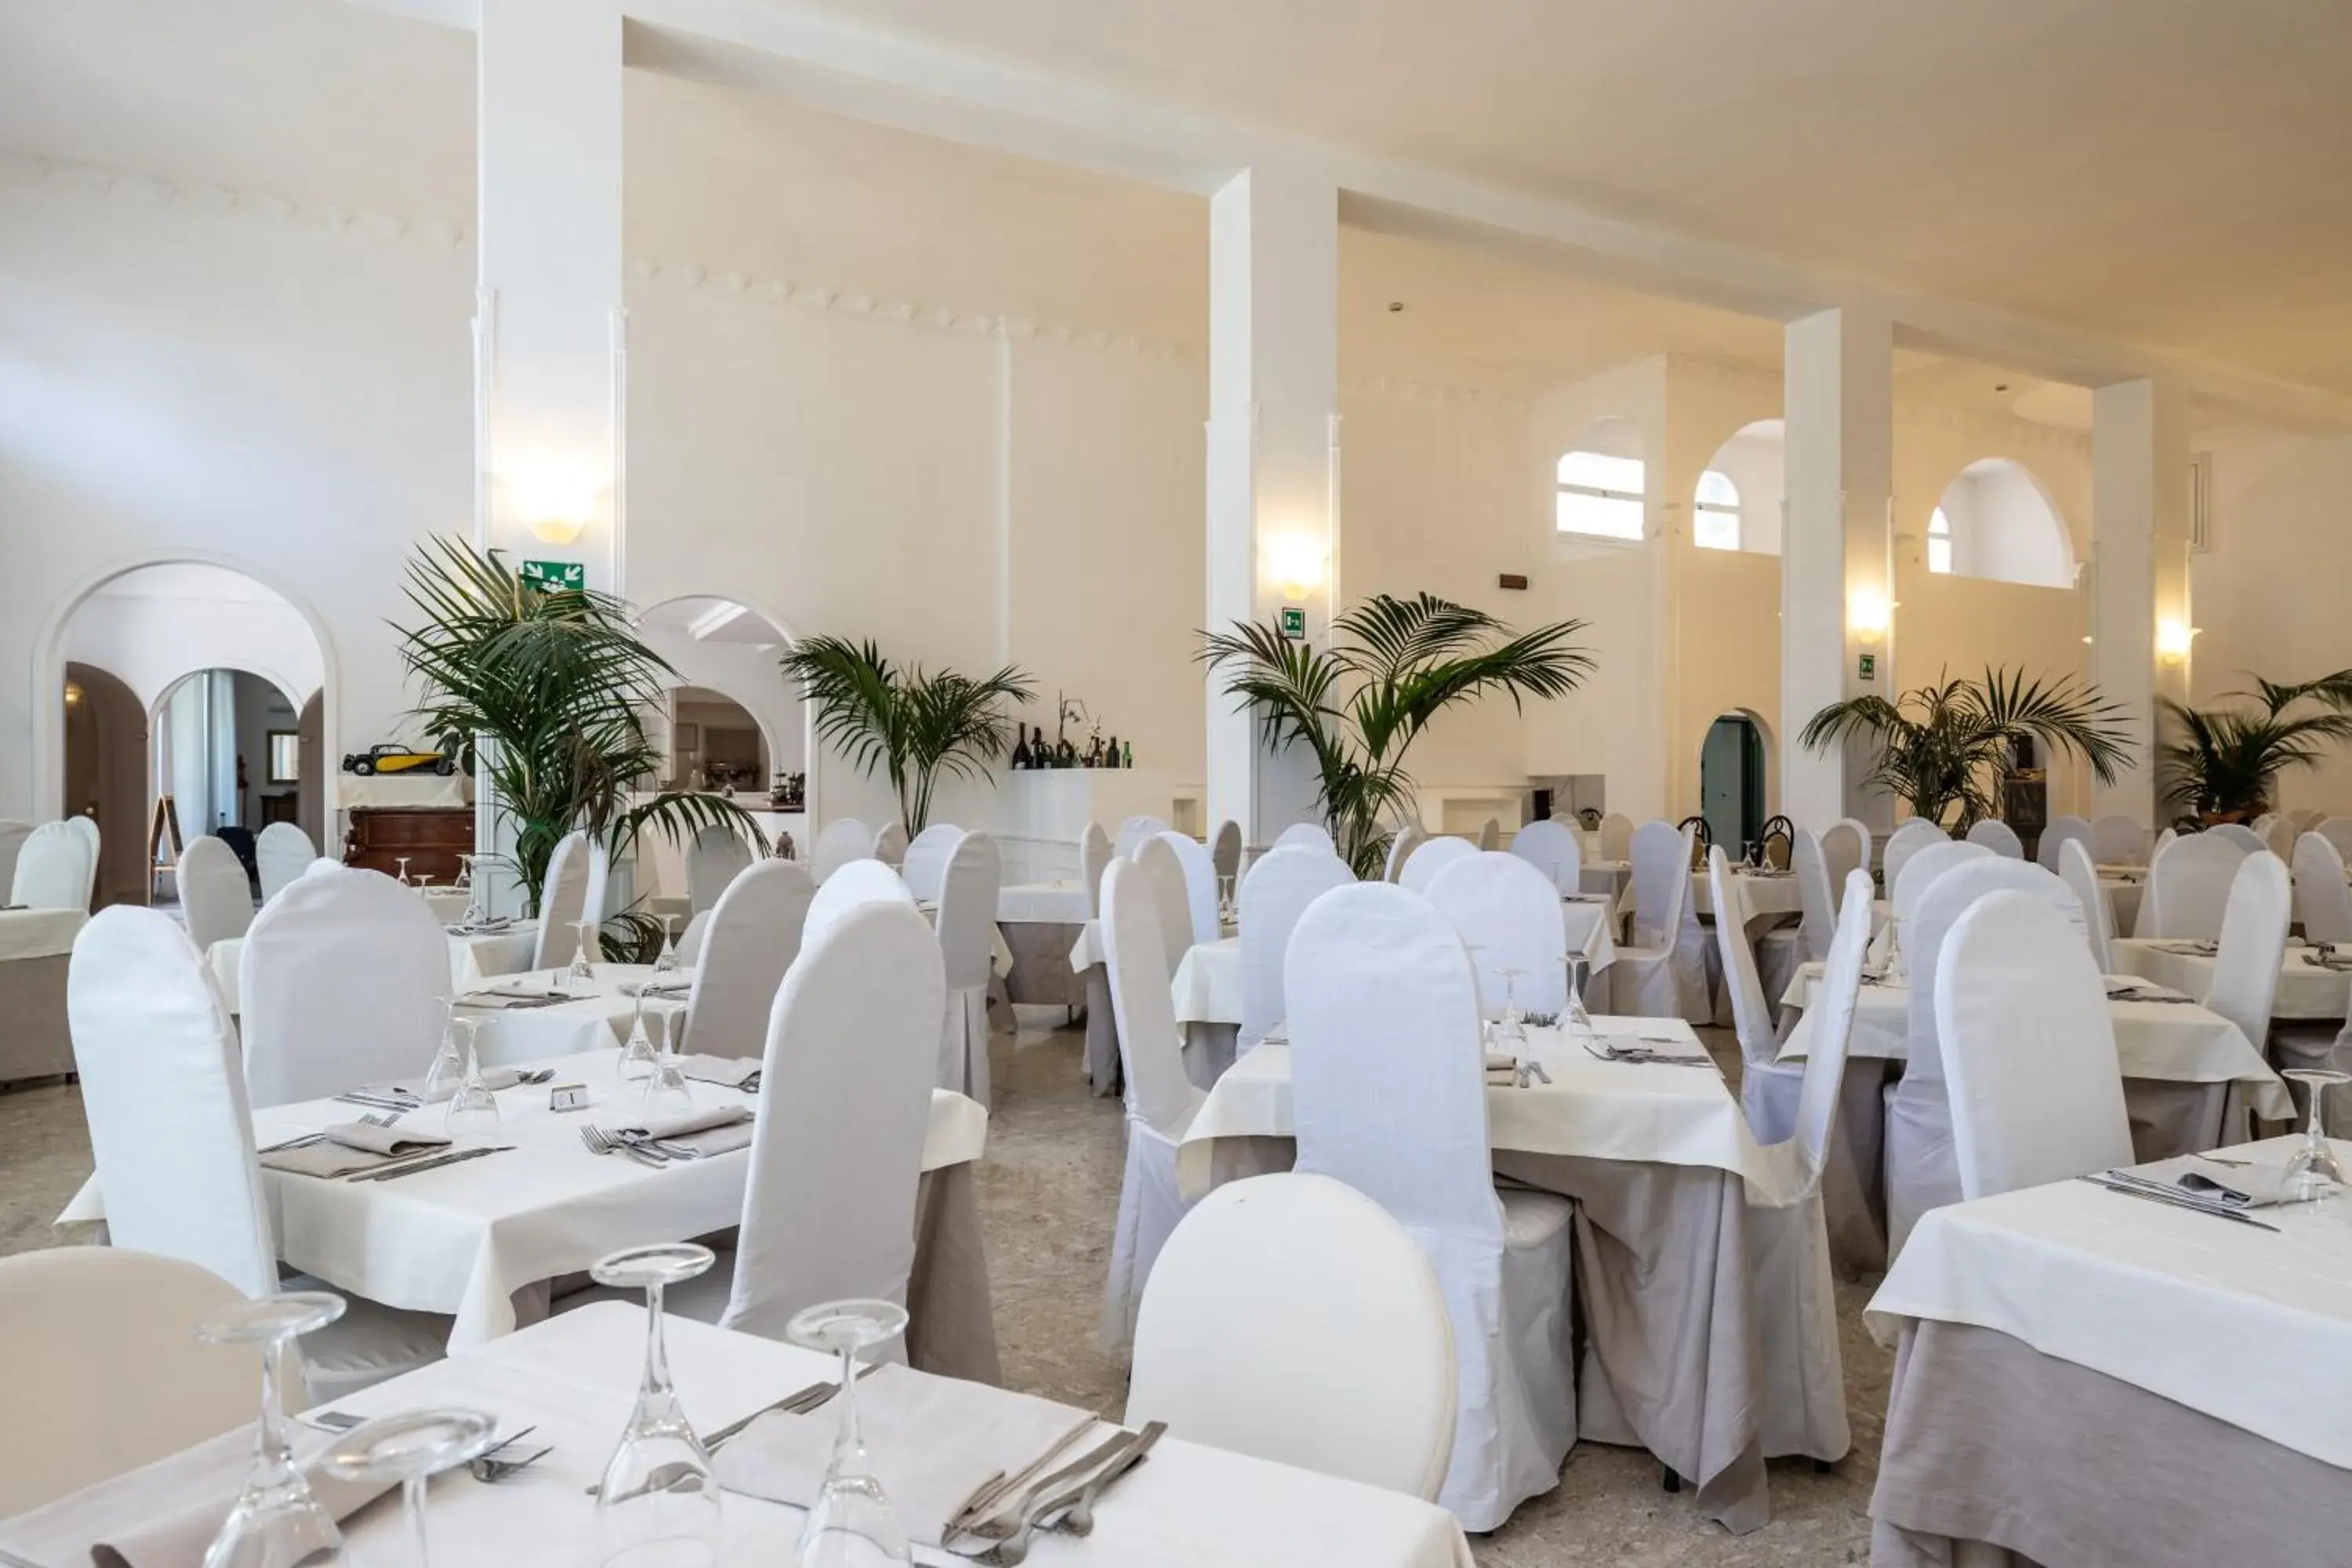 Banquet/Function facilities, Banquet Facilities in Hotel Falcone